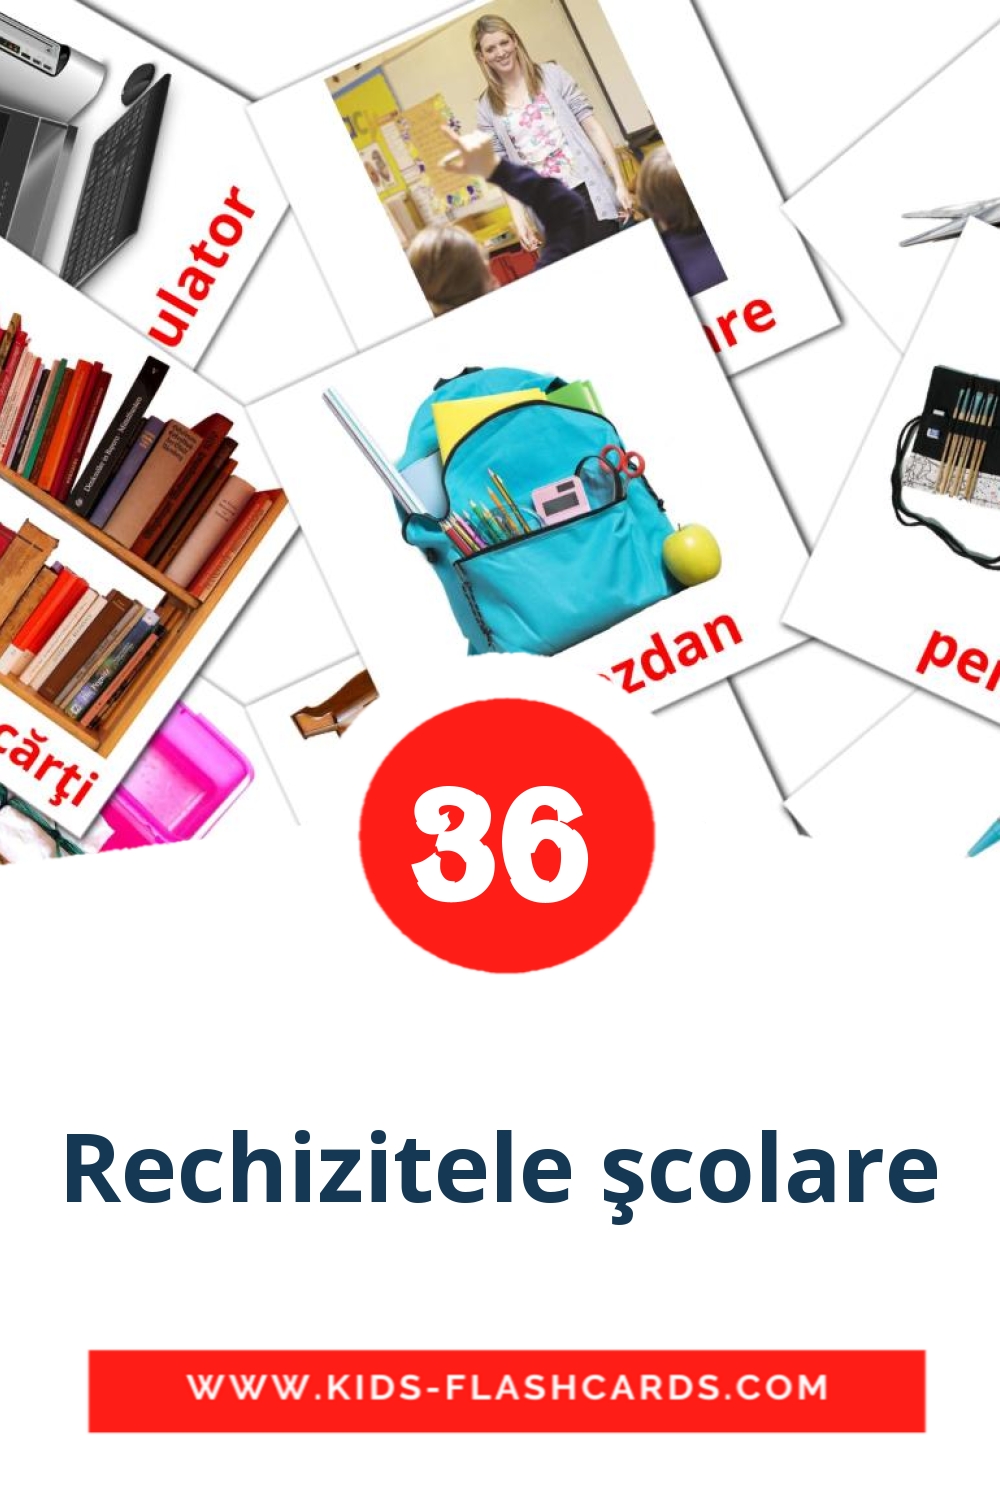 36 Rechizitele şcolare fotokaarten voor kleuters in het roemeense